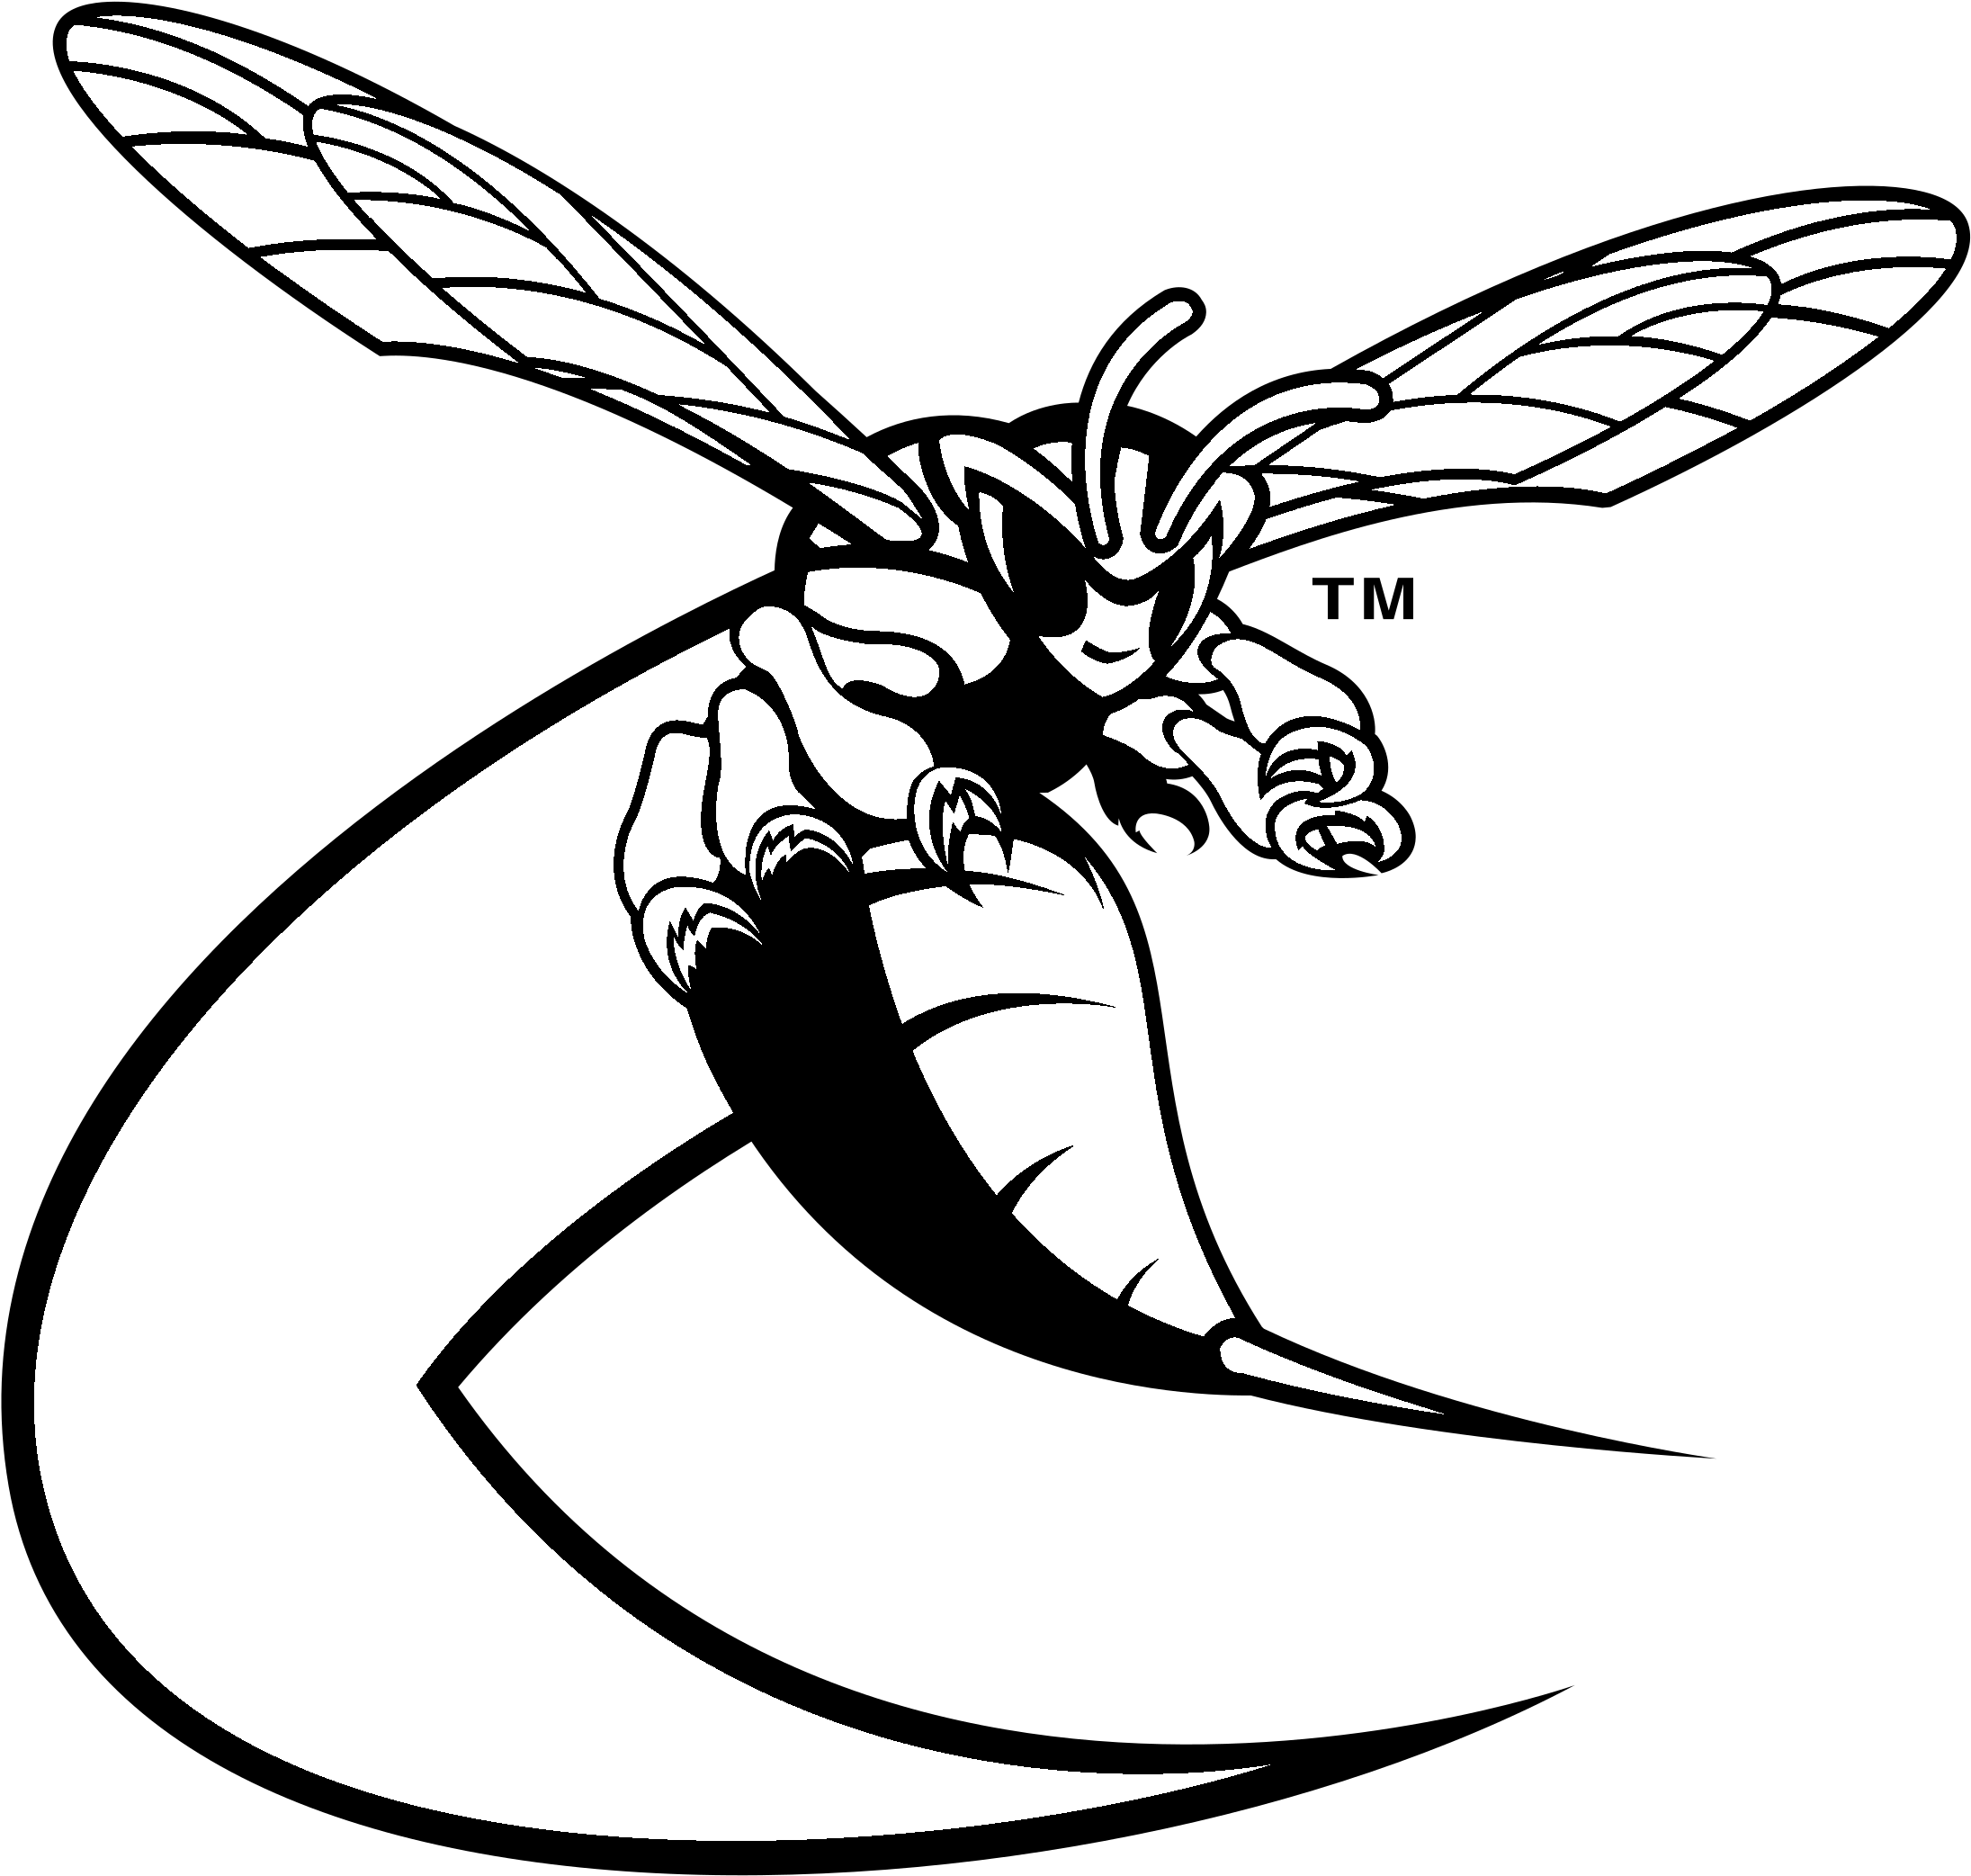 Delaware State Hornets Logo Black And White - Delaware State Hornets Football (2400x2400)